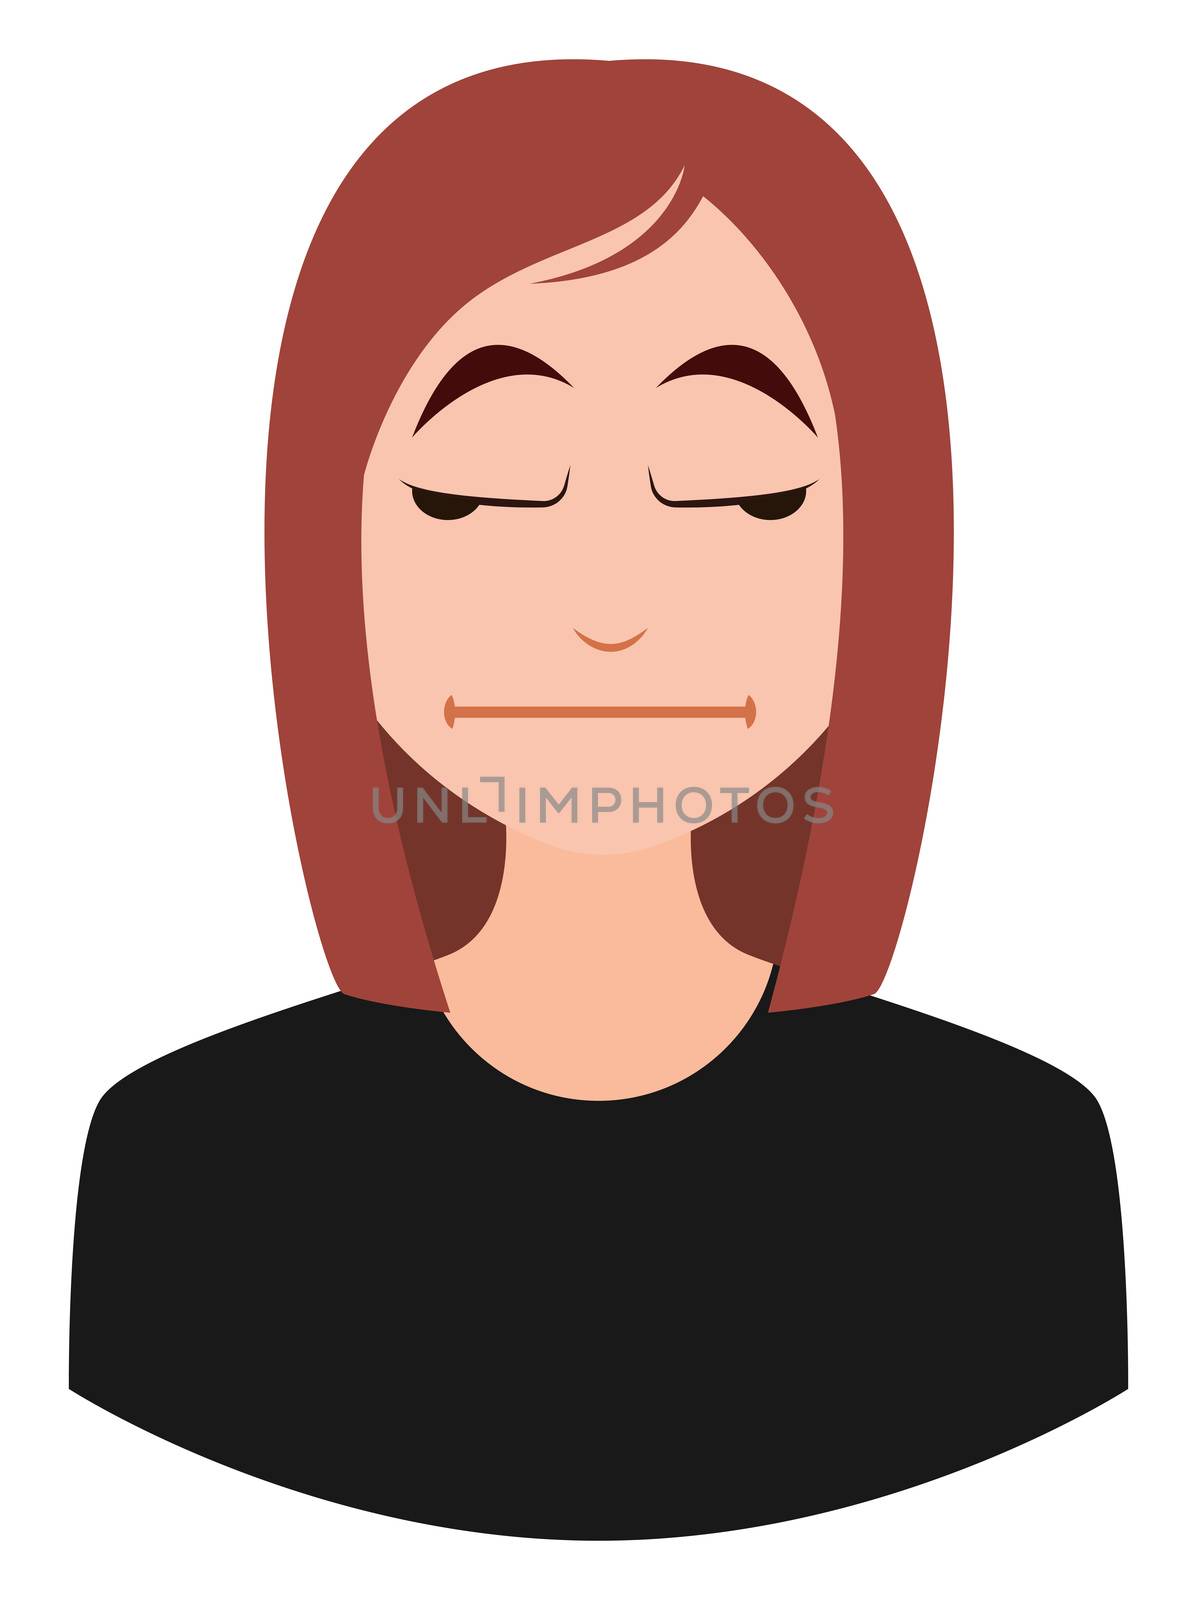 Bored girl emoji, illustration, vector on white background